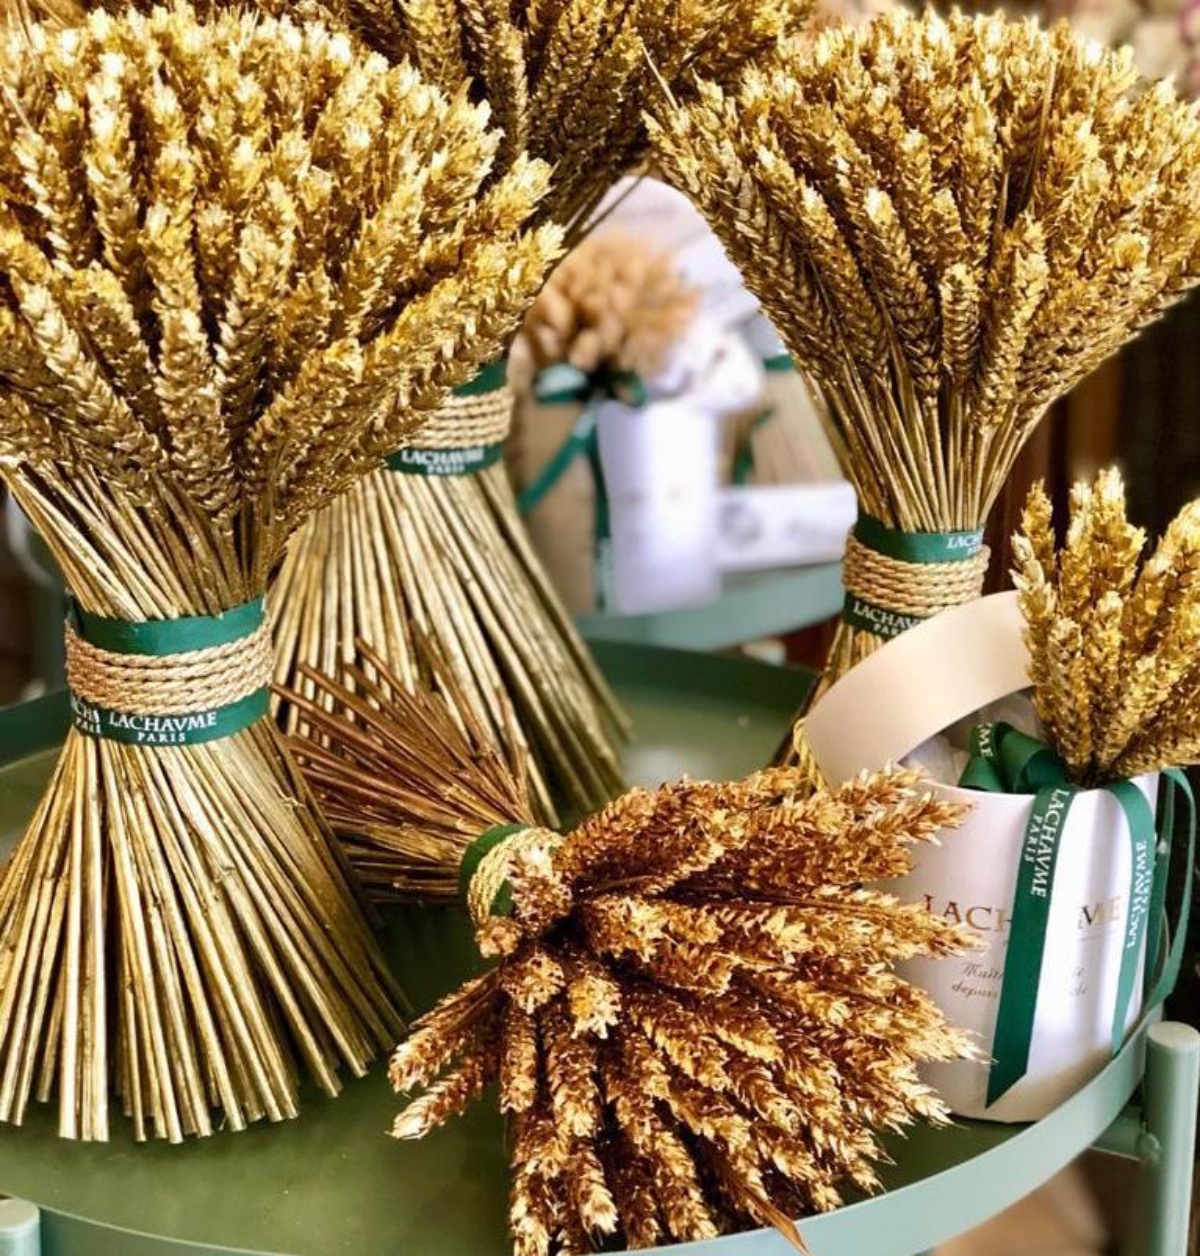 Lachaume wheat bundles